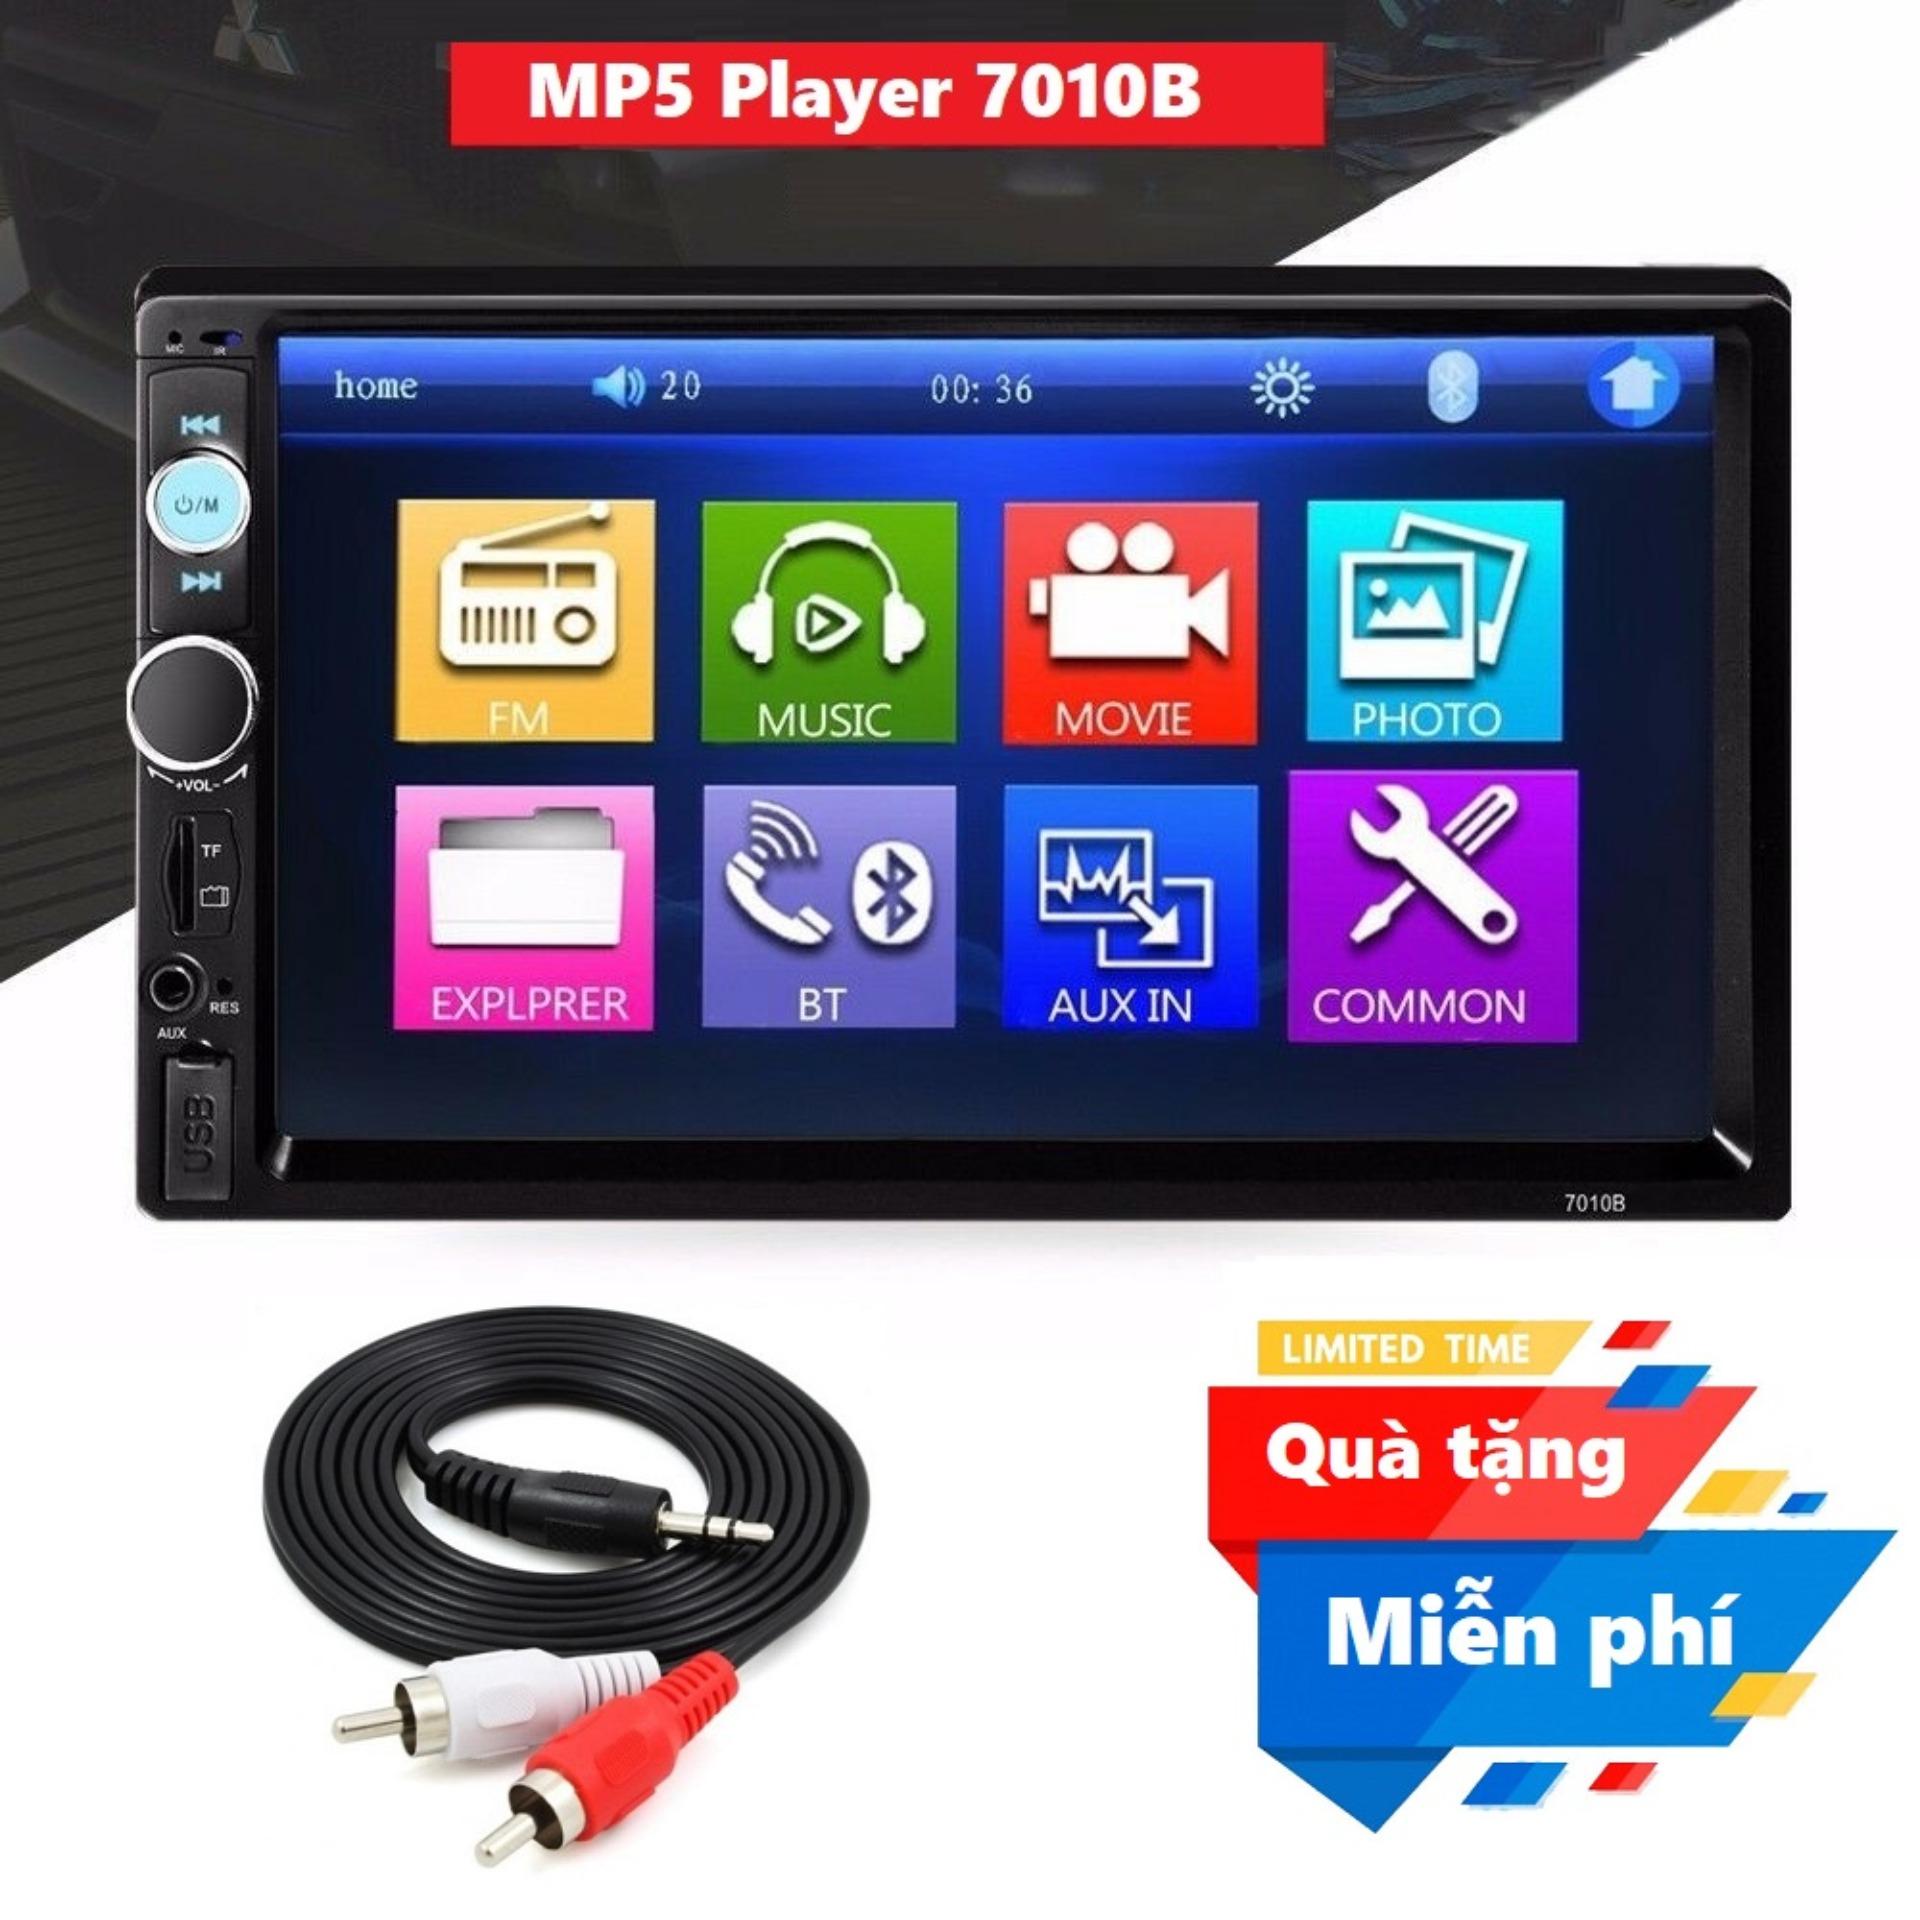 Màn hình 7 inch ô tô 2 din Mp5 đa năng 7010B - MP5 Player 7010B cho ô tô màn hình cảm ứng Tặng kèm Dây loa ra 2 AV 1.5m chất lượng cao